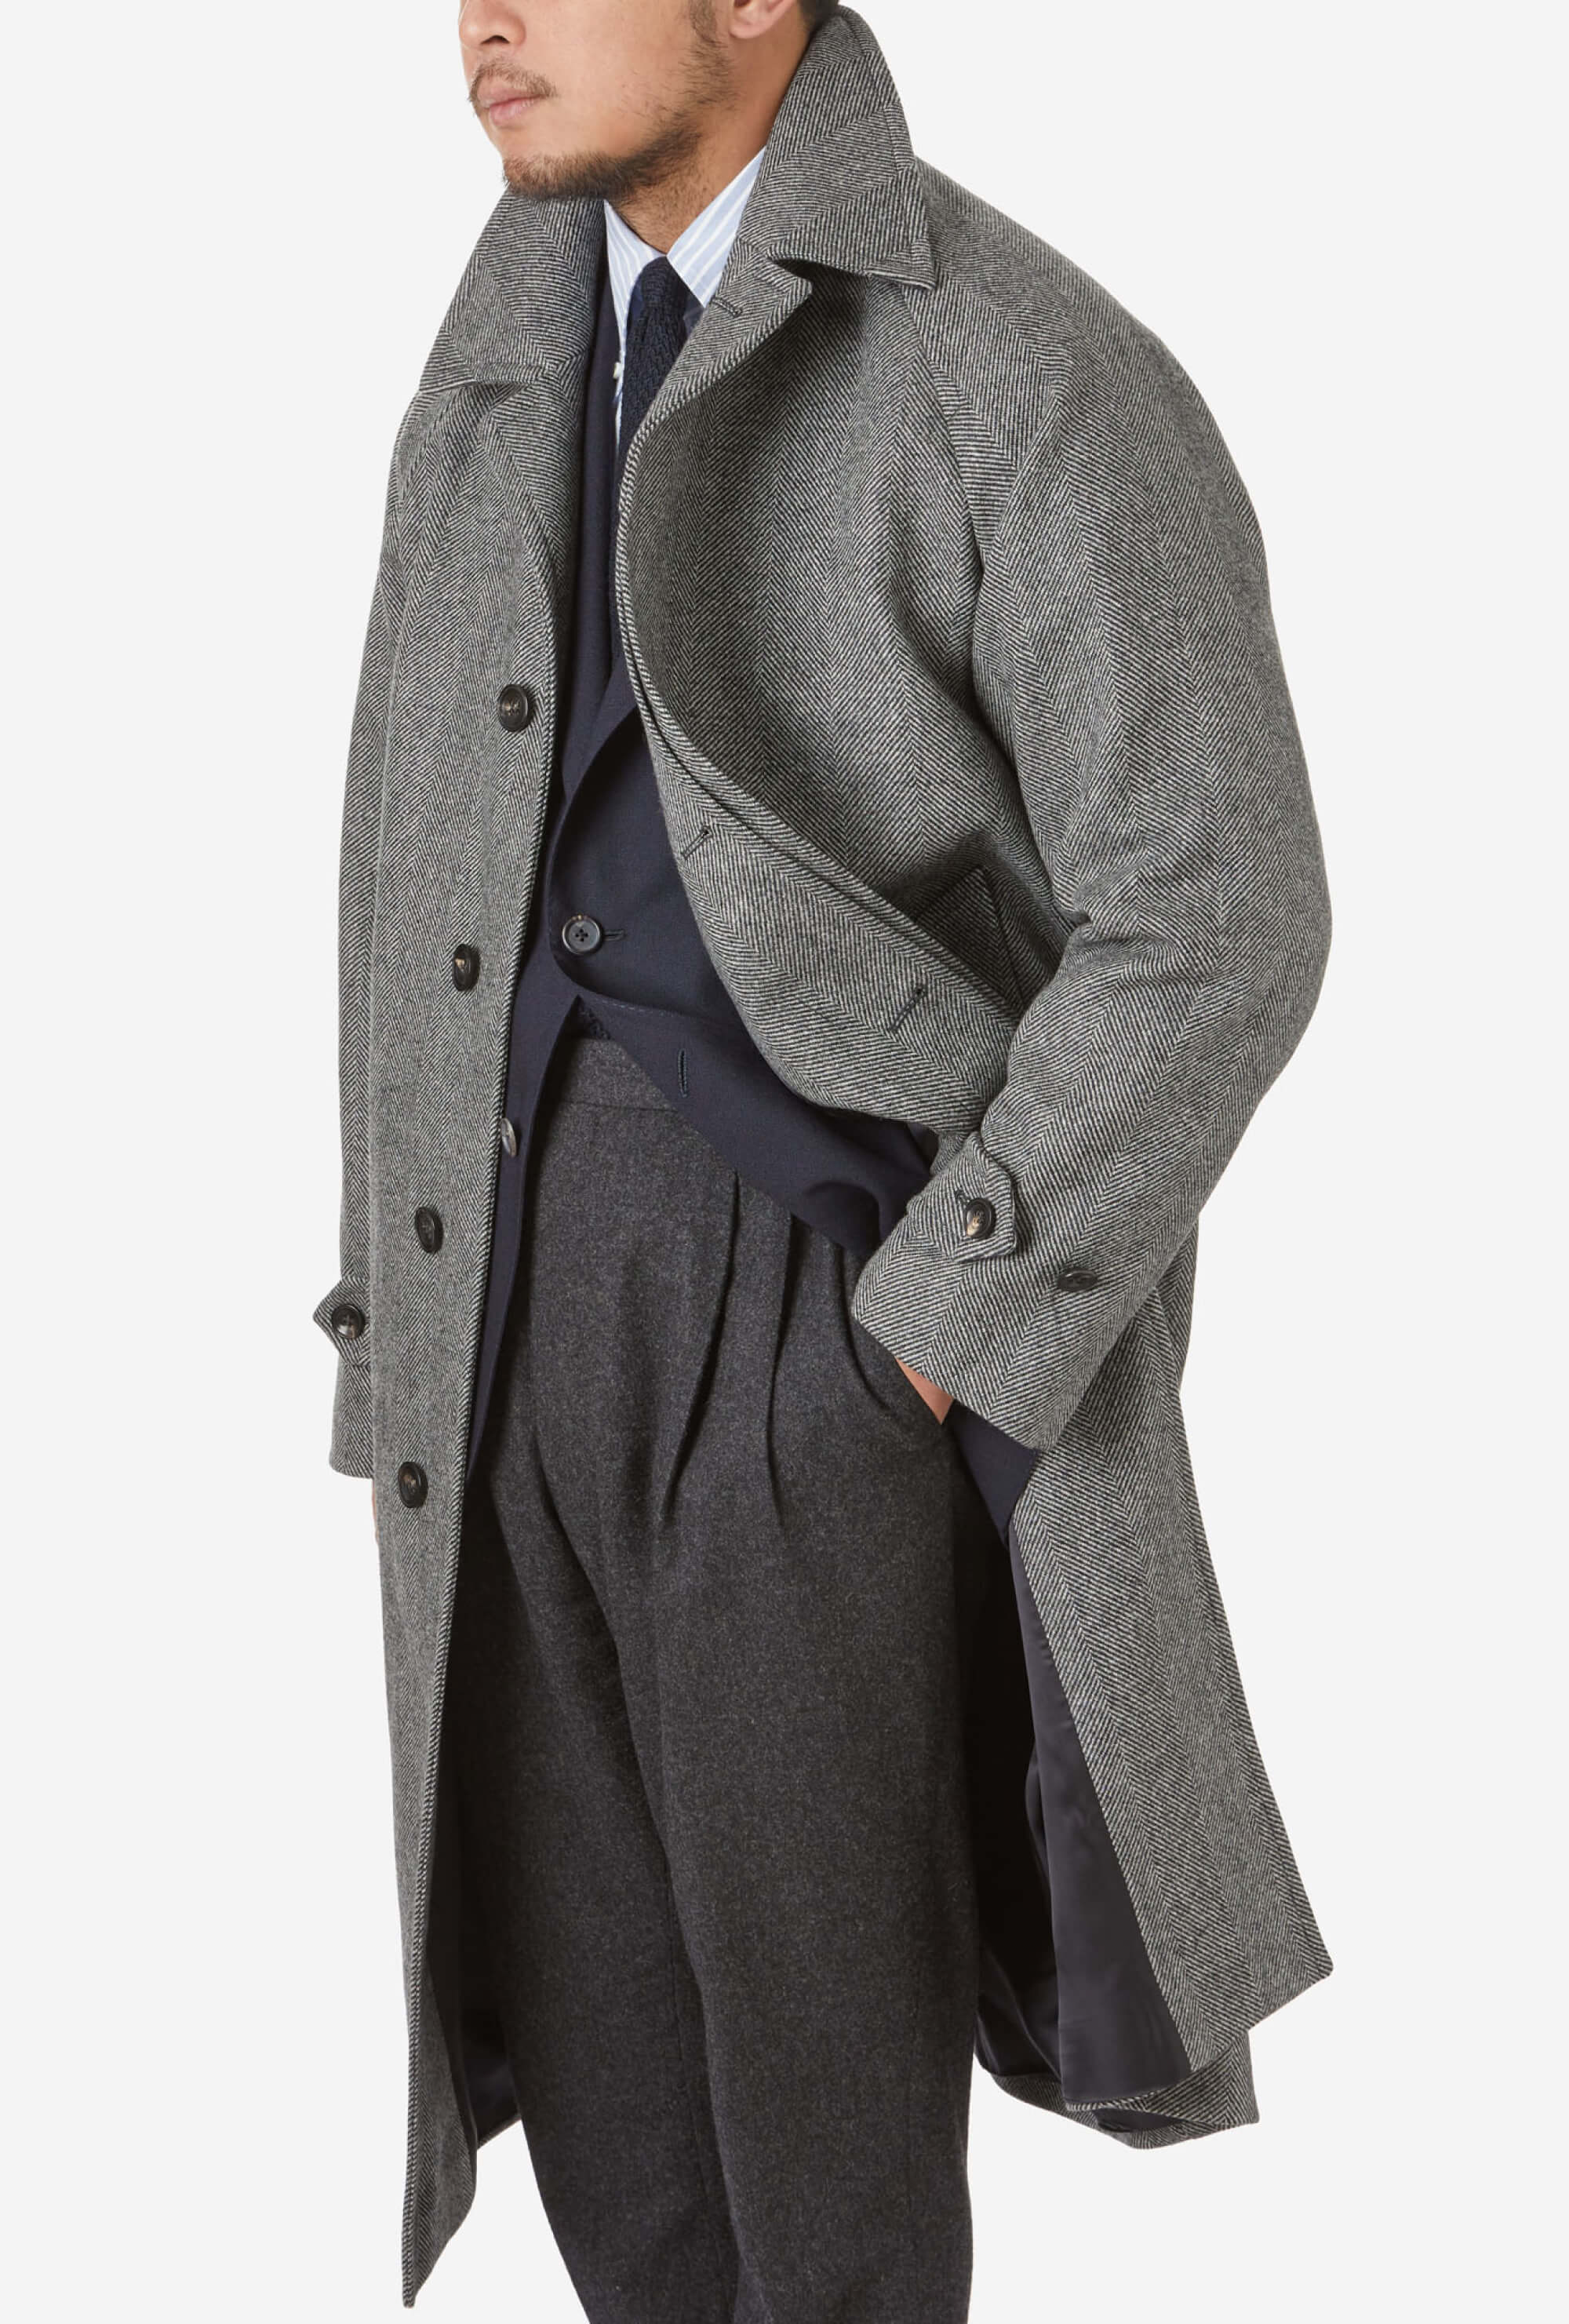 Raglan Sleeve Overcoat Wool Grey Herringbone